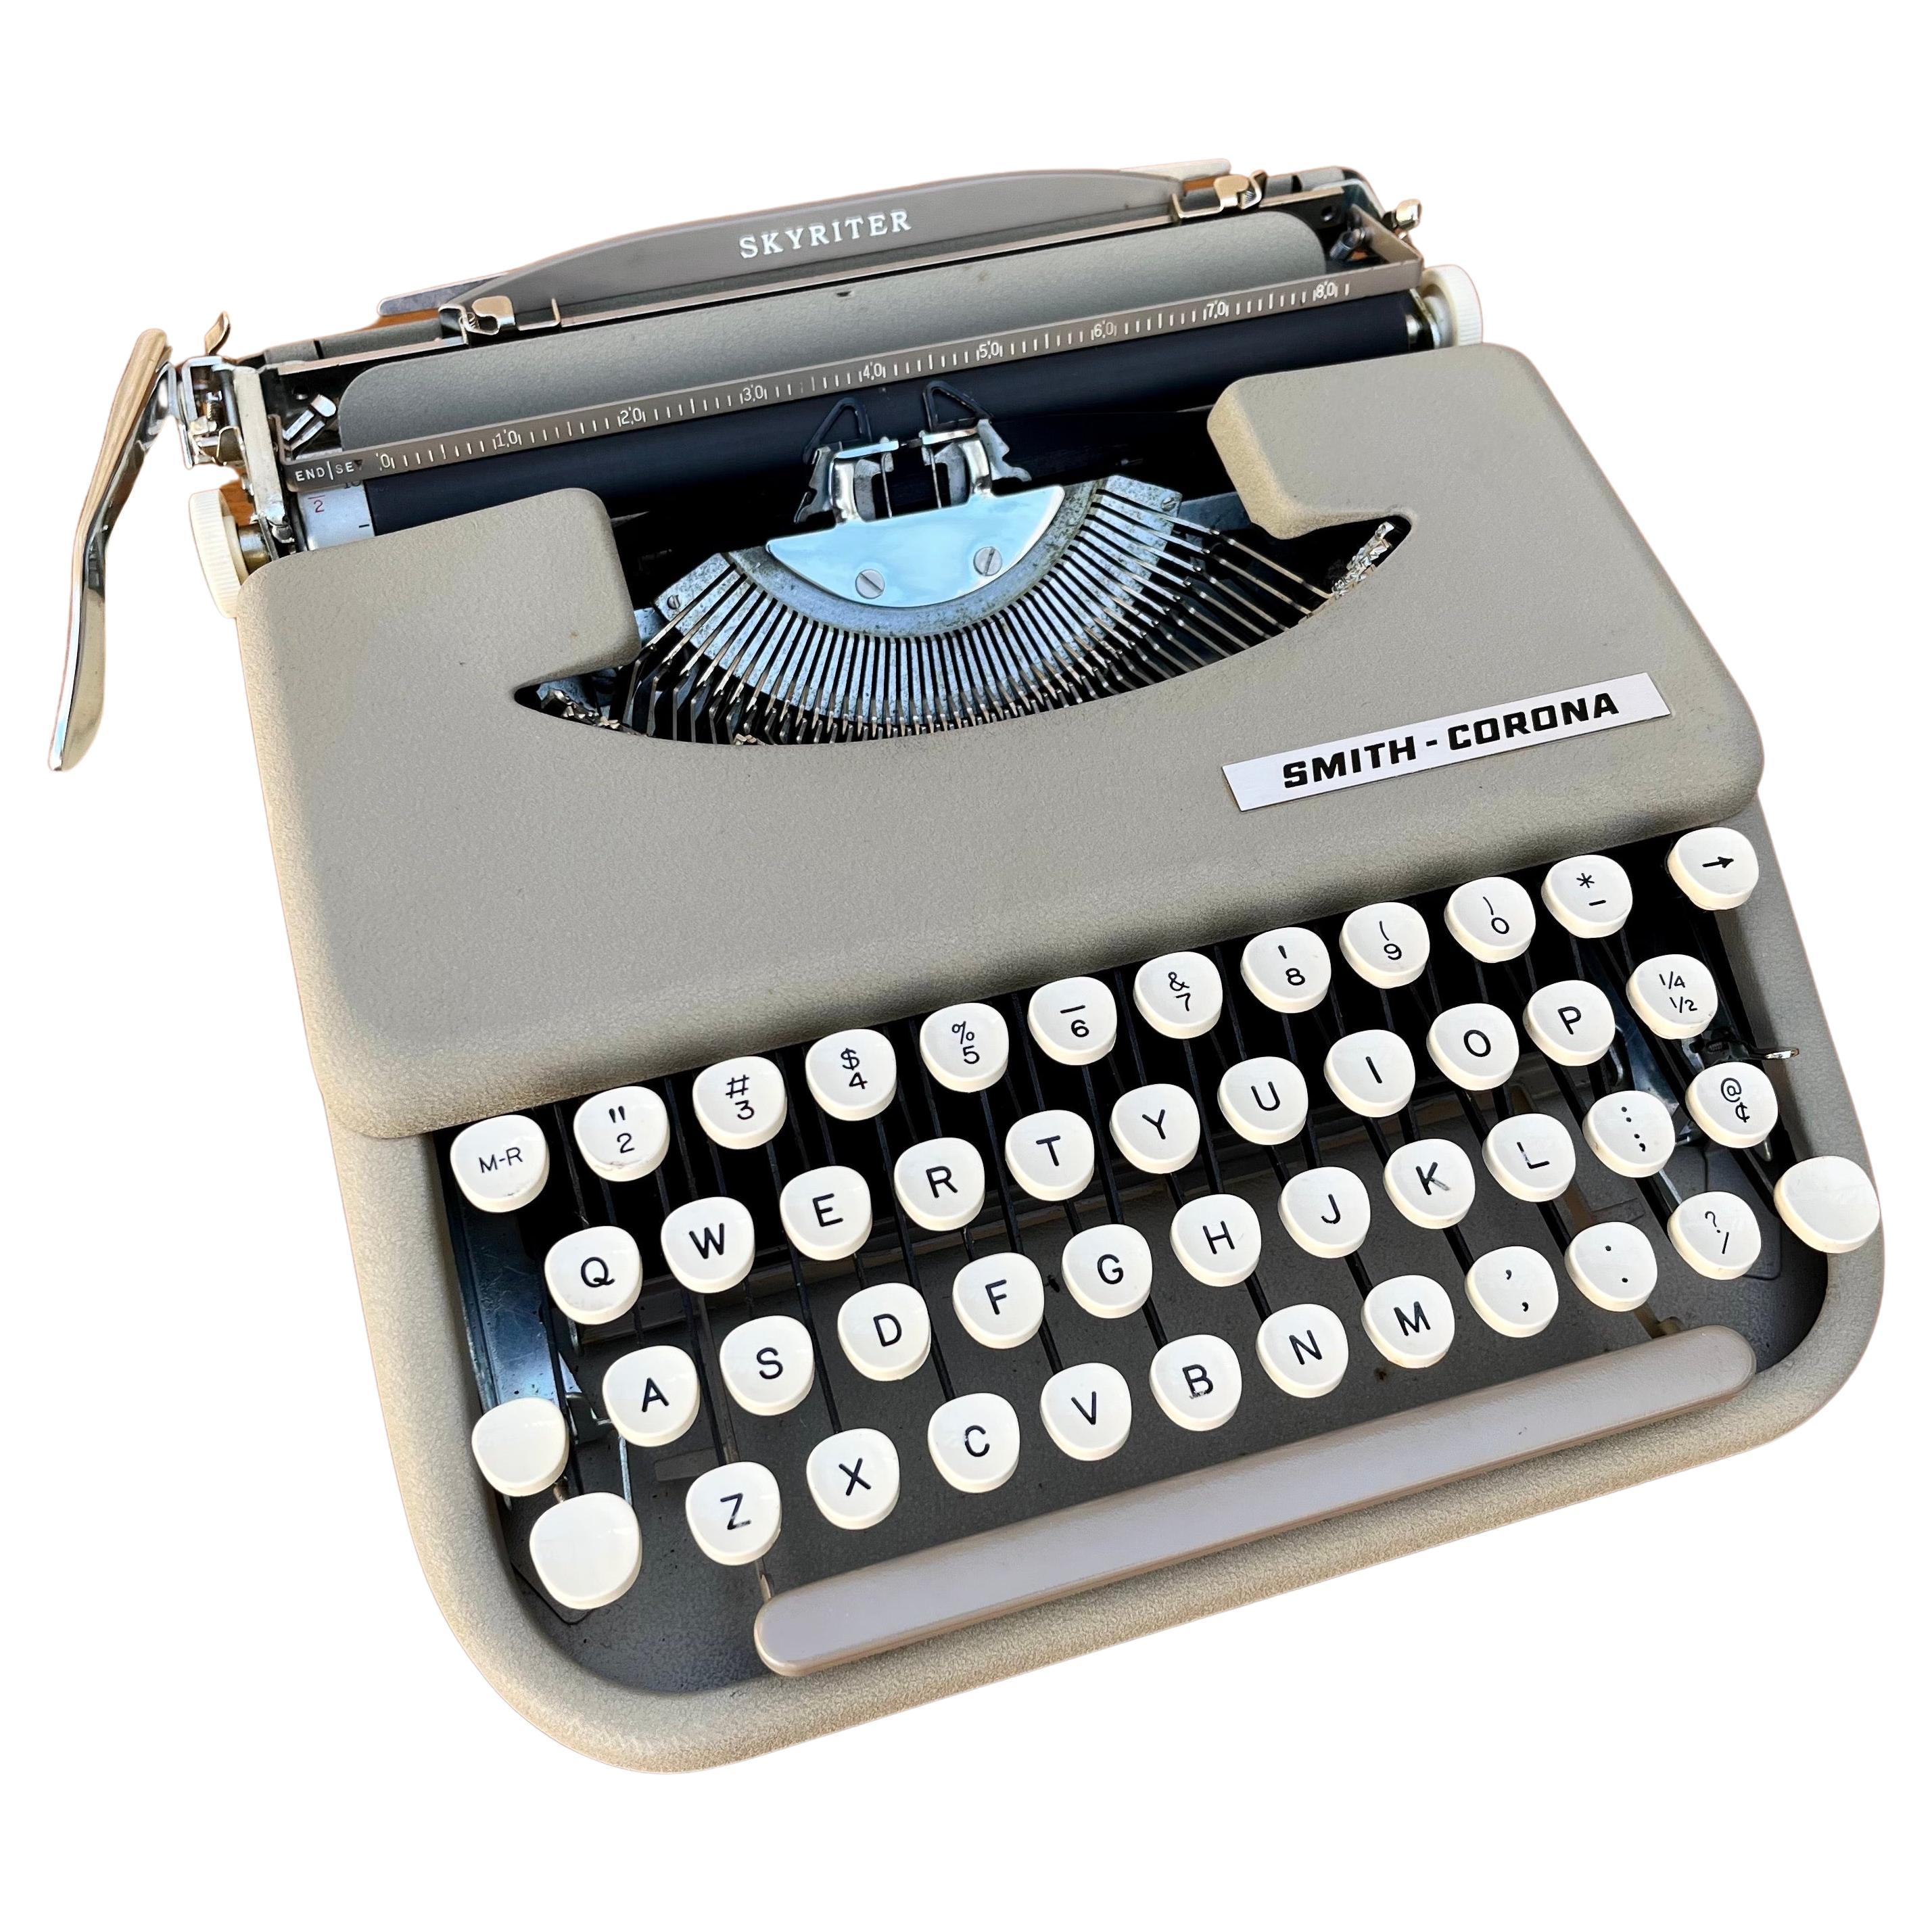 Type-writer pour ordinateur portable Smith Corona Skyriter avec étui en vinyle des années 1960